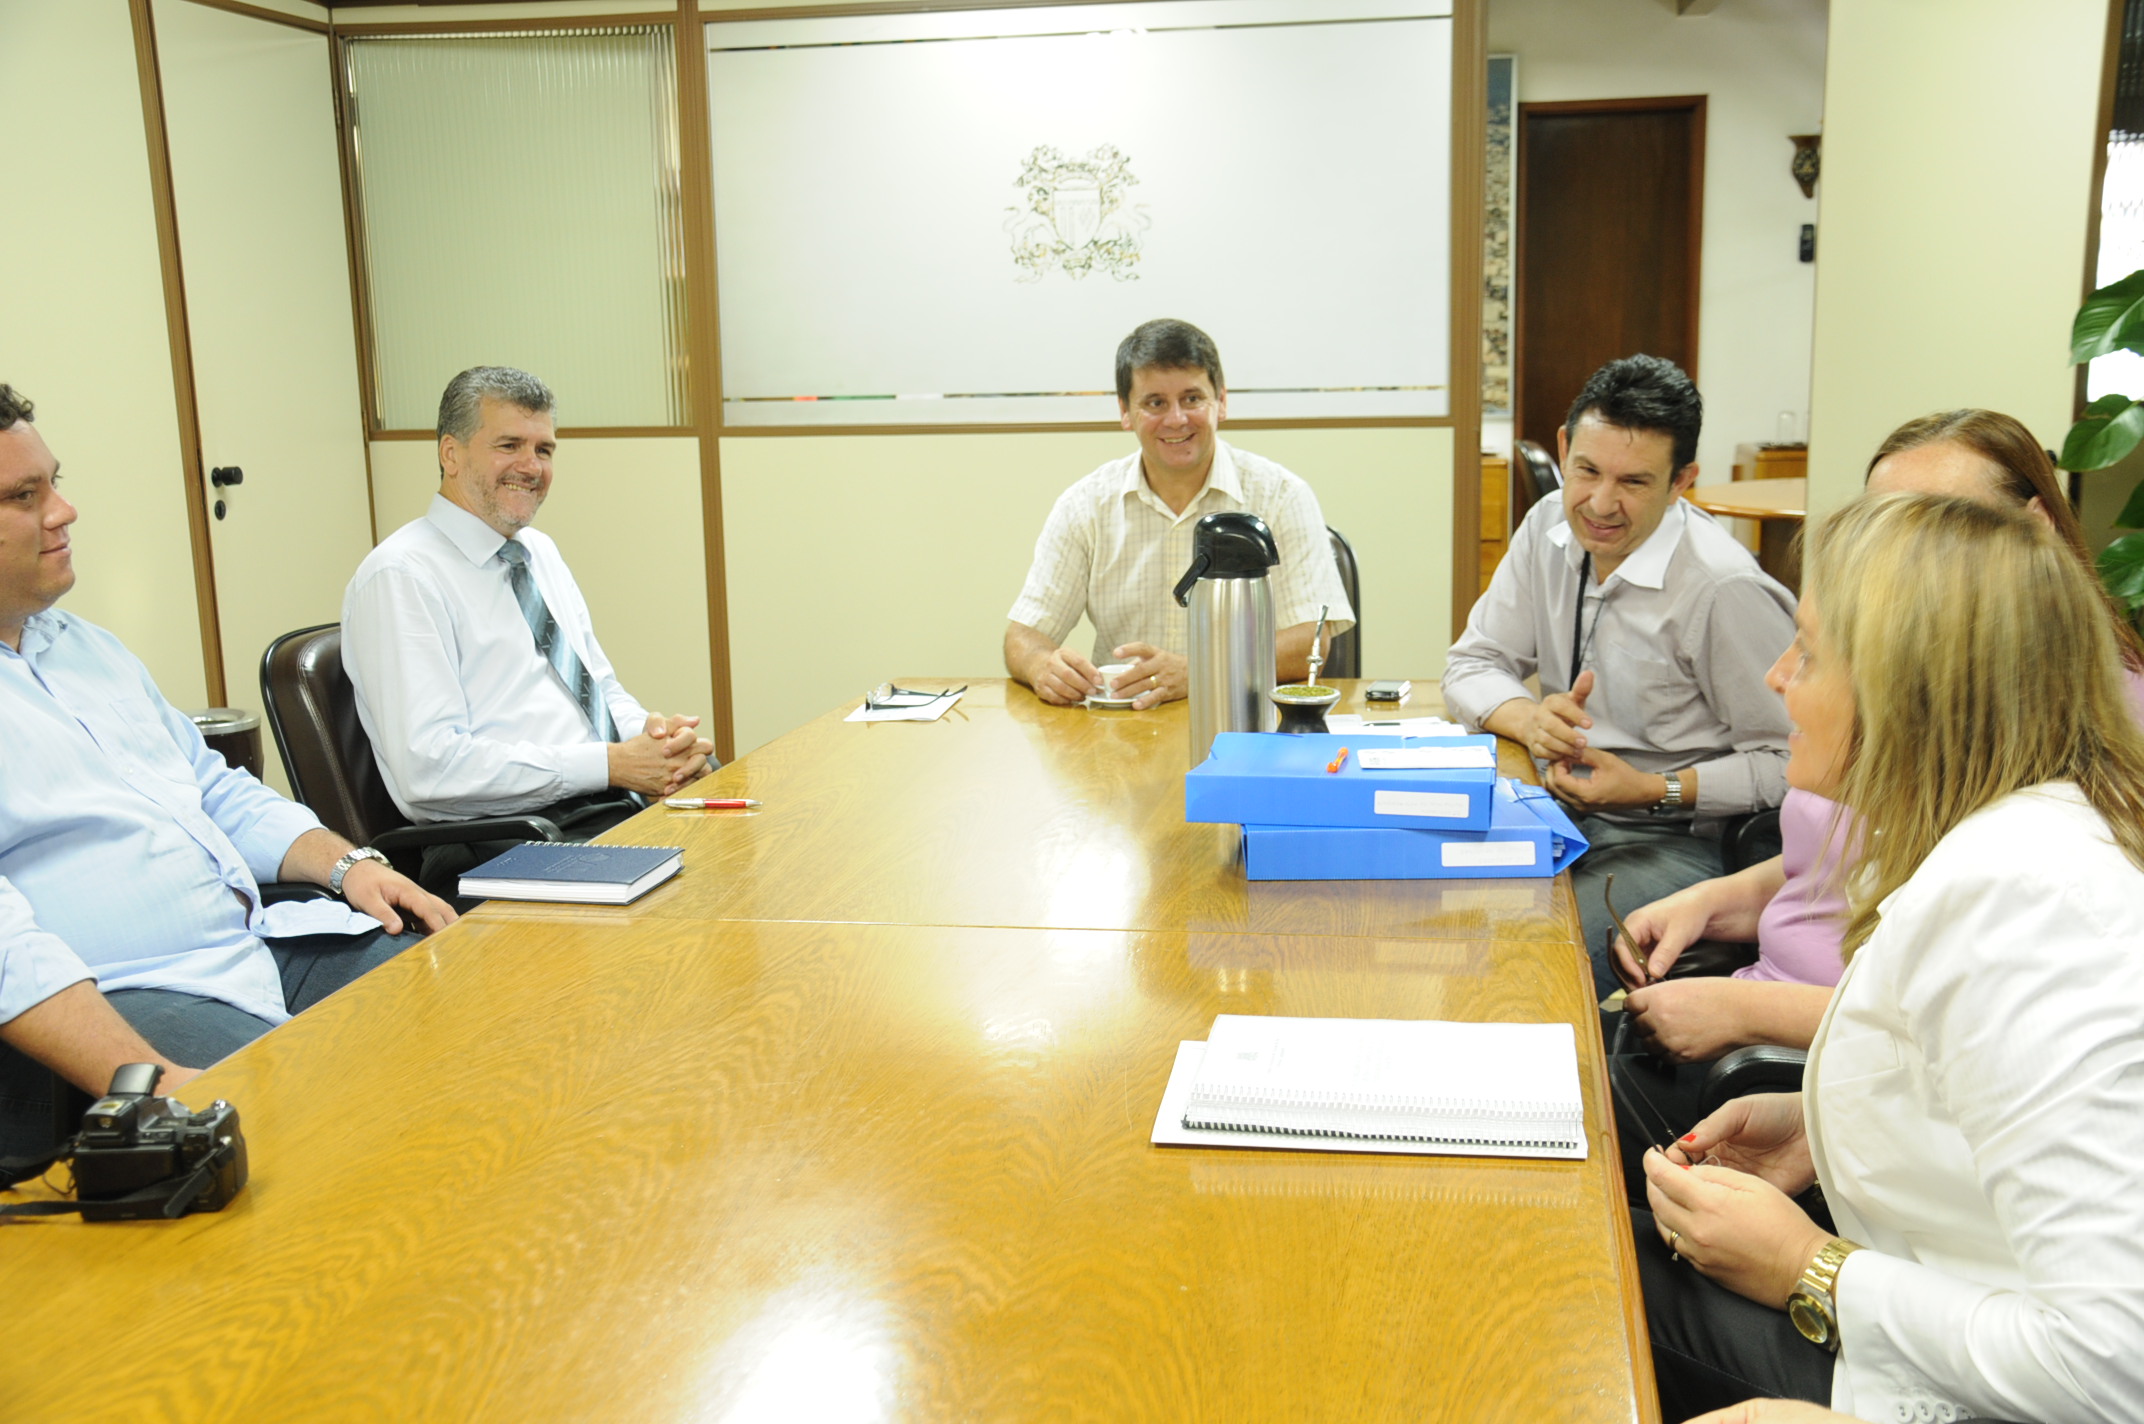 Presidente Daneluz recebe visita de vereador de Cachoeira do Sul